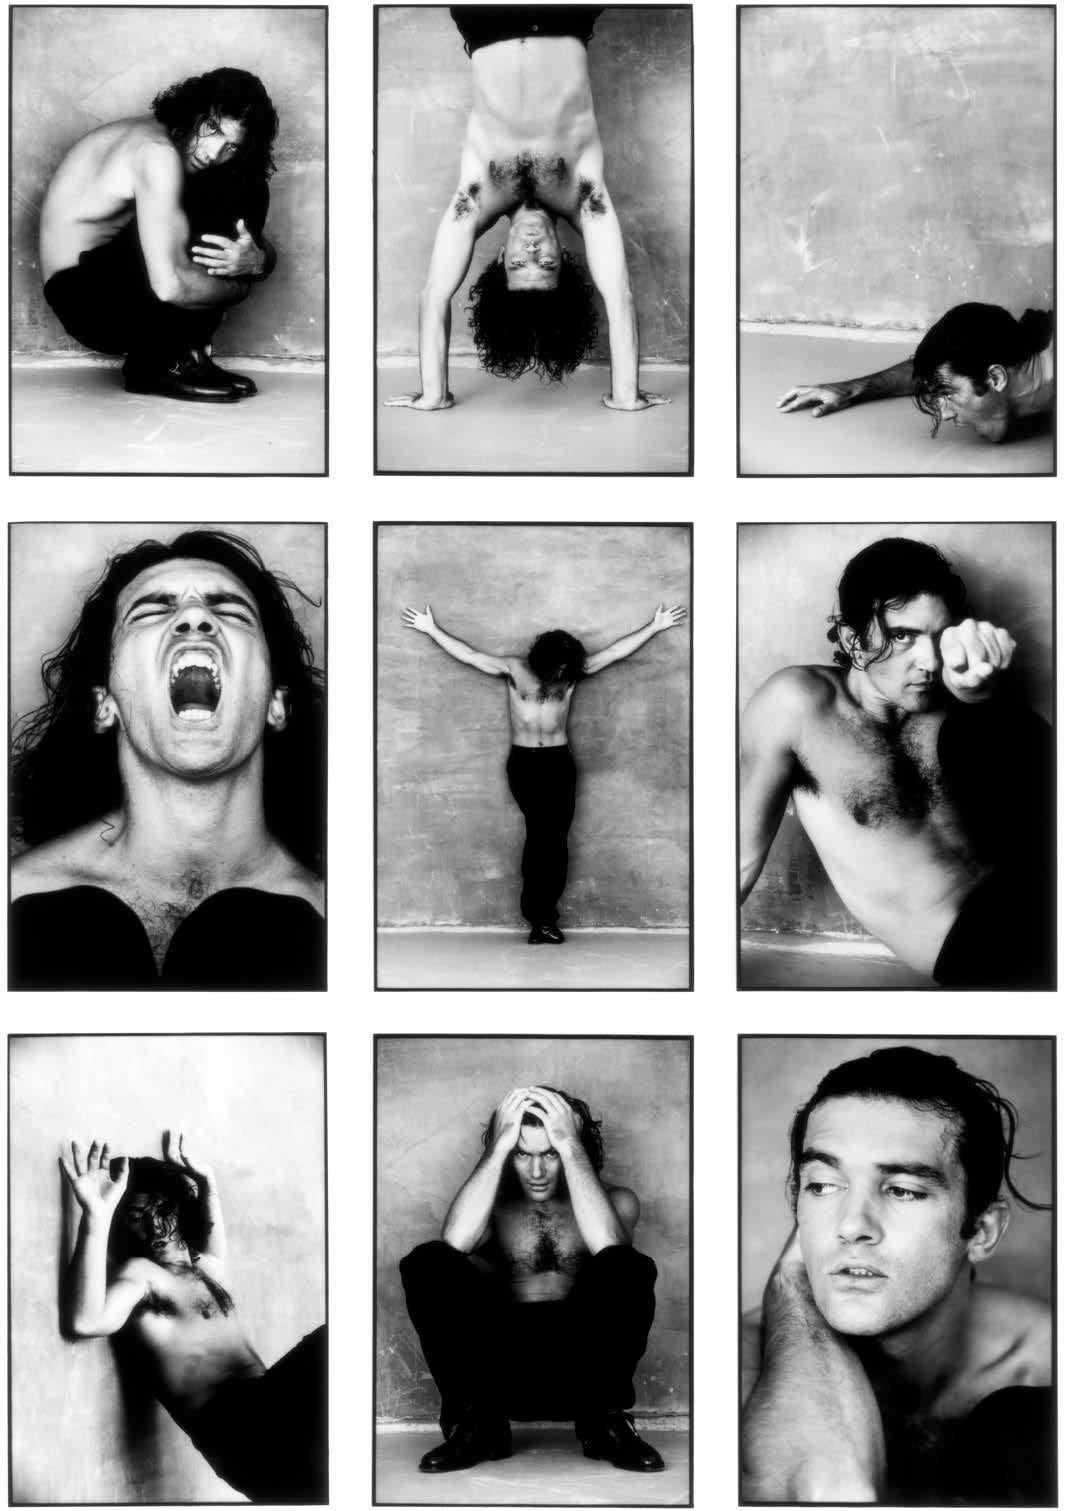 Antonio Banderas LA, Photographie, n&b, célébrité, portrait, contemporain